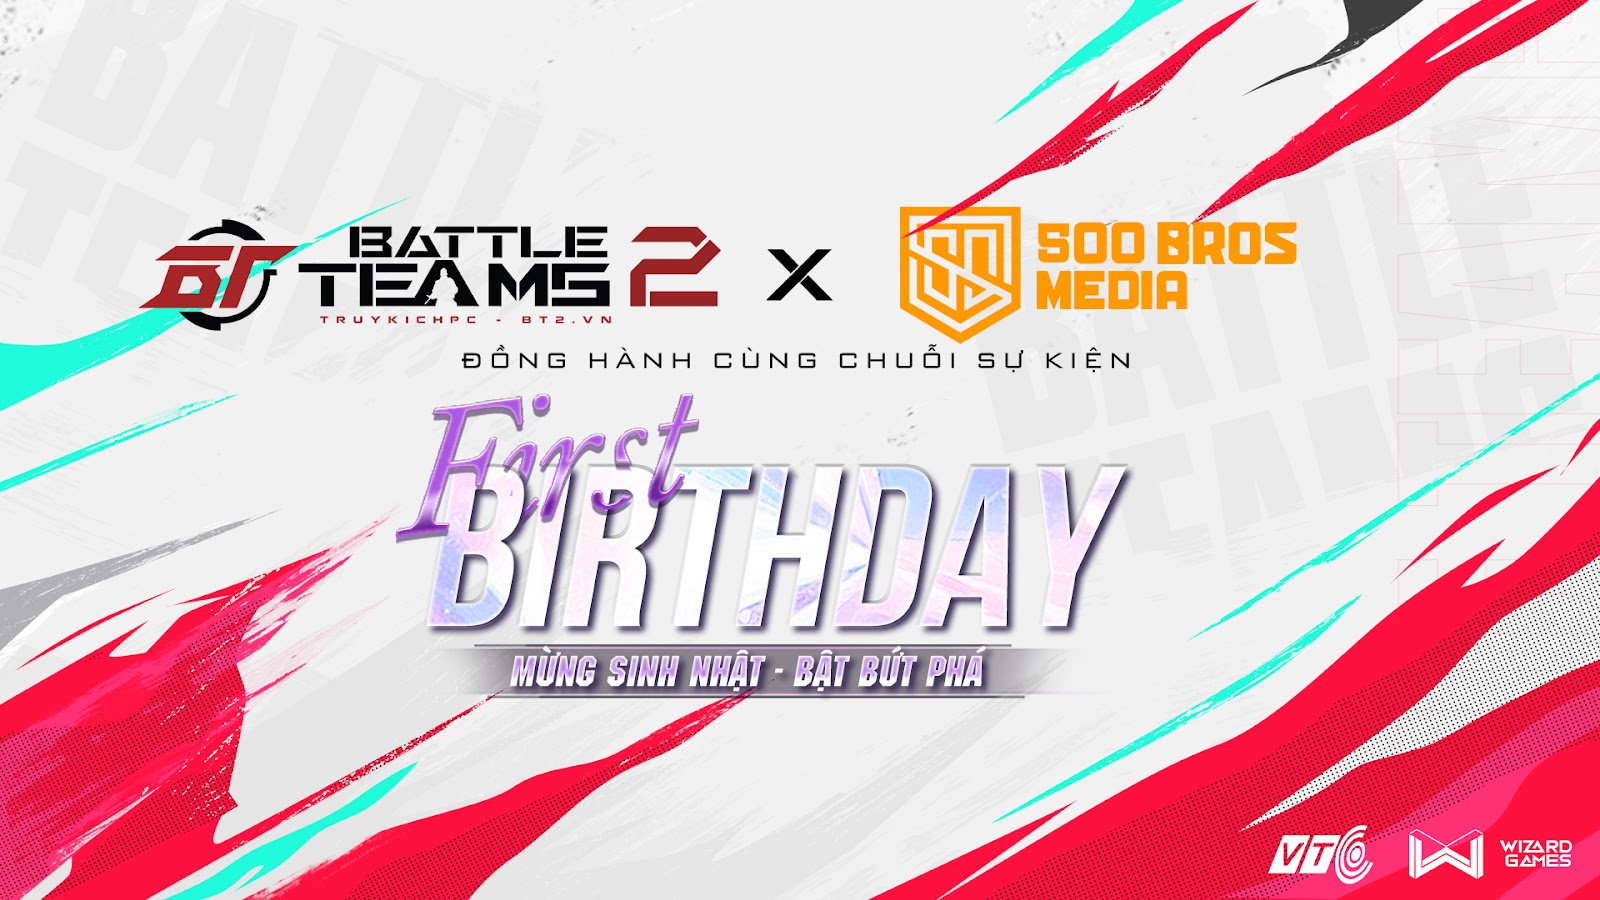 VTC “chơi lớn” hợp tác với 500BROS tổ chức chuỗi sự kiện khủng mừng sinh nhật 1 tuổi của Battle Teams 2